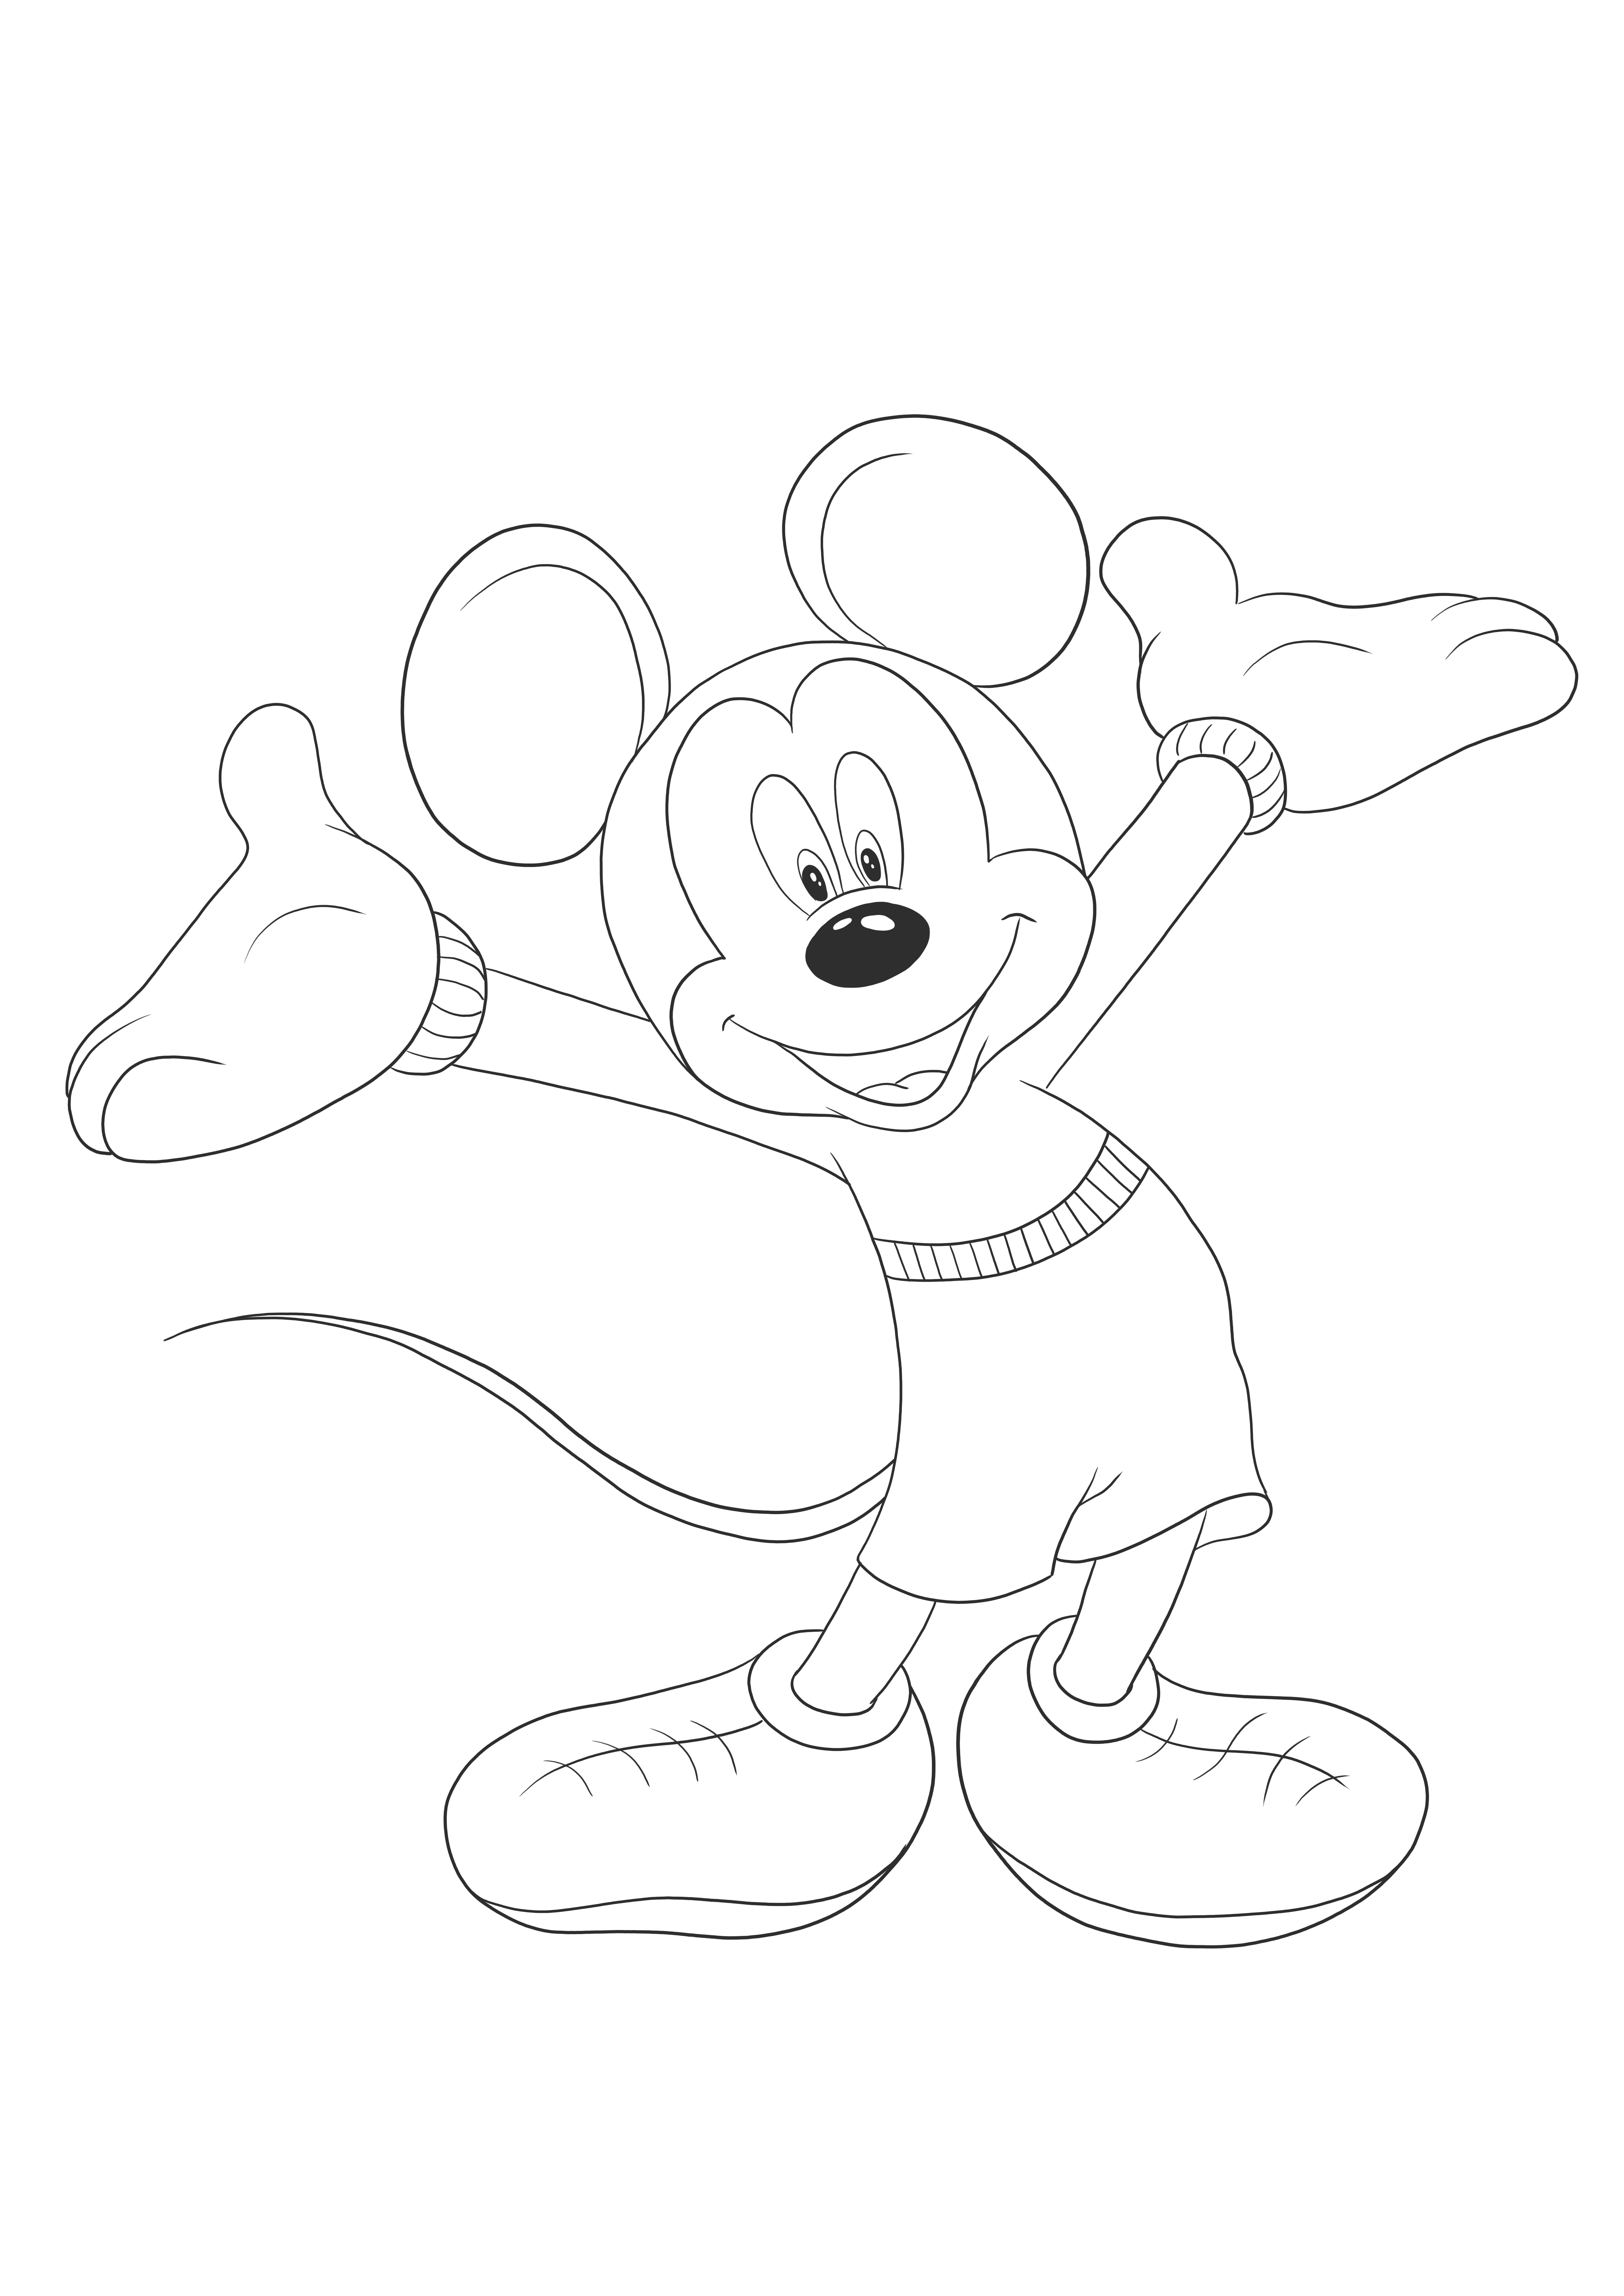 Happy Mikey Mouse wartet darauf, farbig frei bedruckbar zu sein